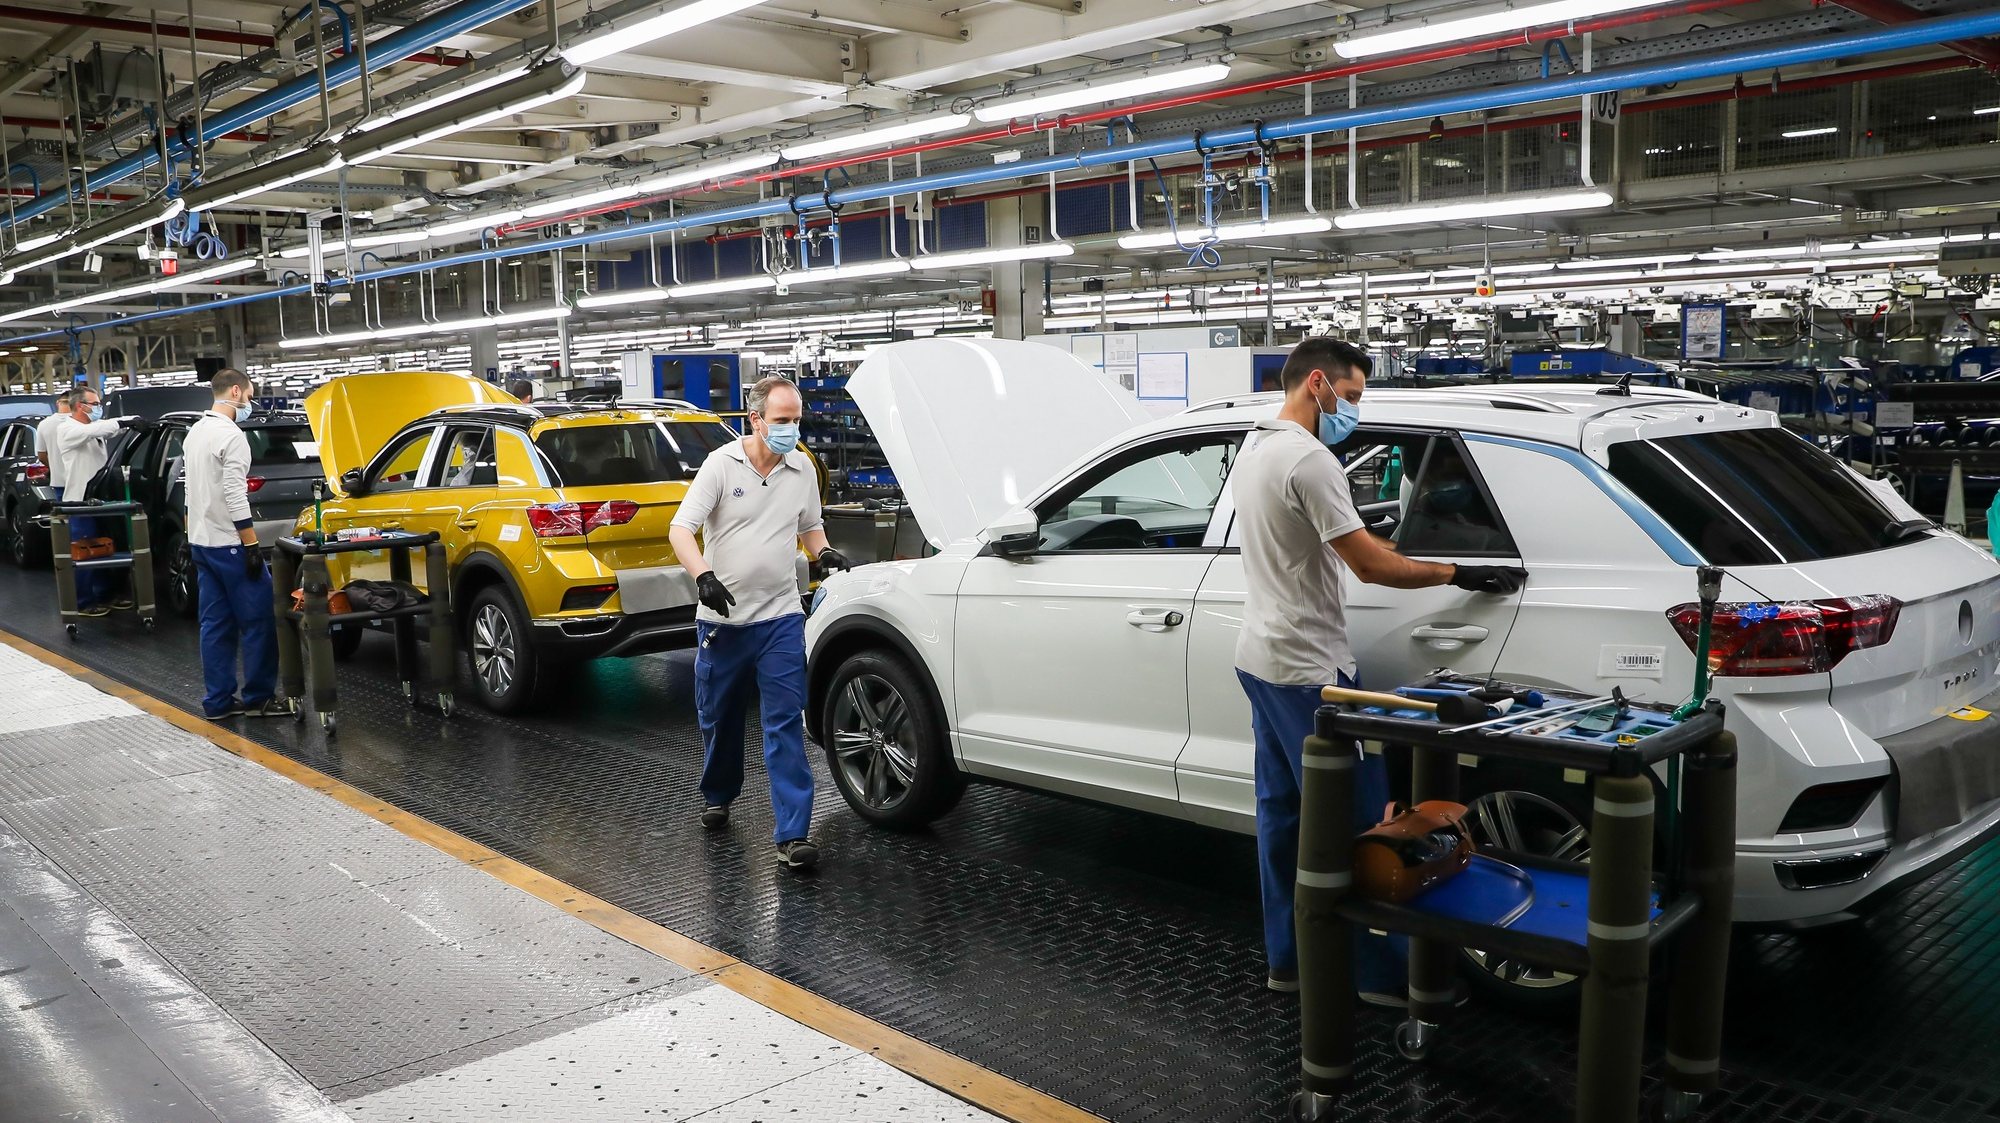 Funcionários da Autoeuropa trabalham na construção do Volkswagen T-Roc na fábrica da Autoeuropa, em Palmela, 13 de maio de 2020. JOSÉ SENA GOULÃO/LUSA